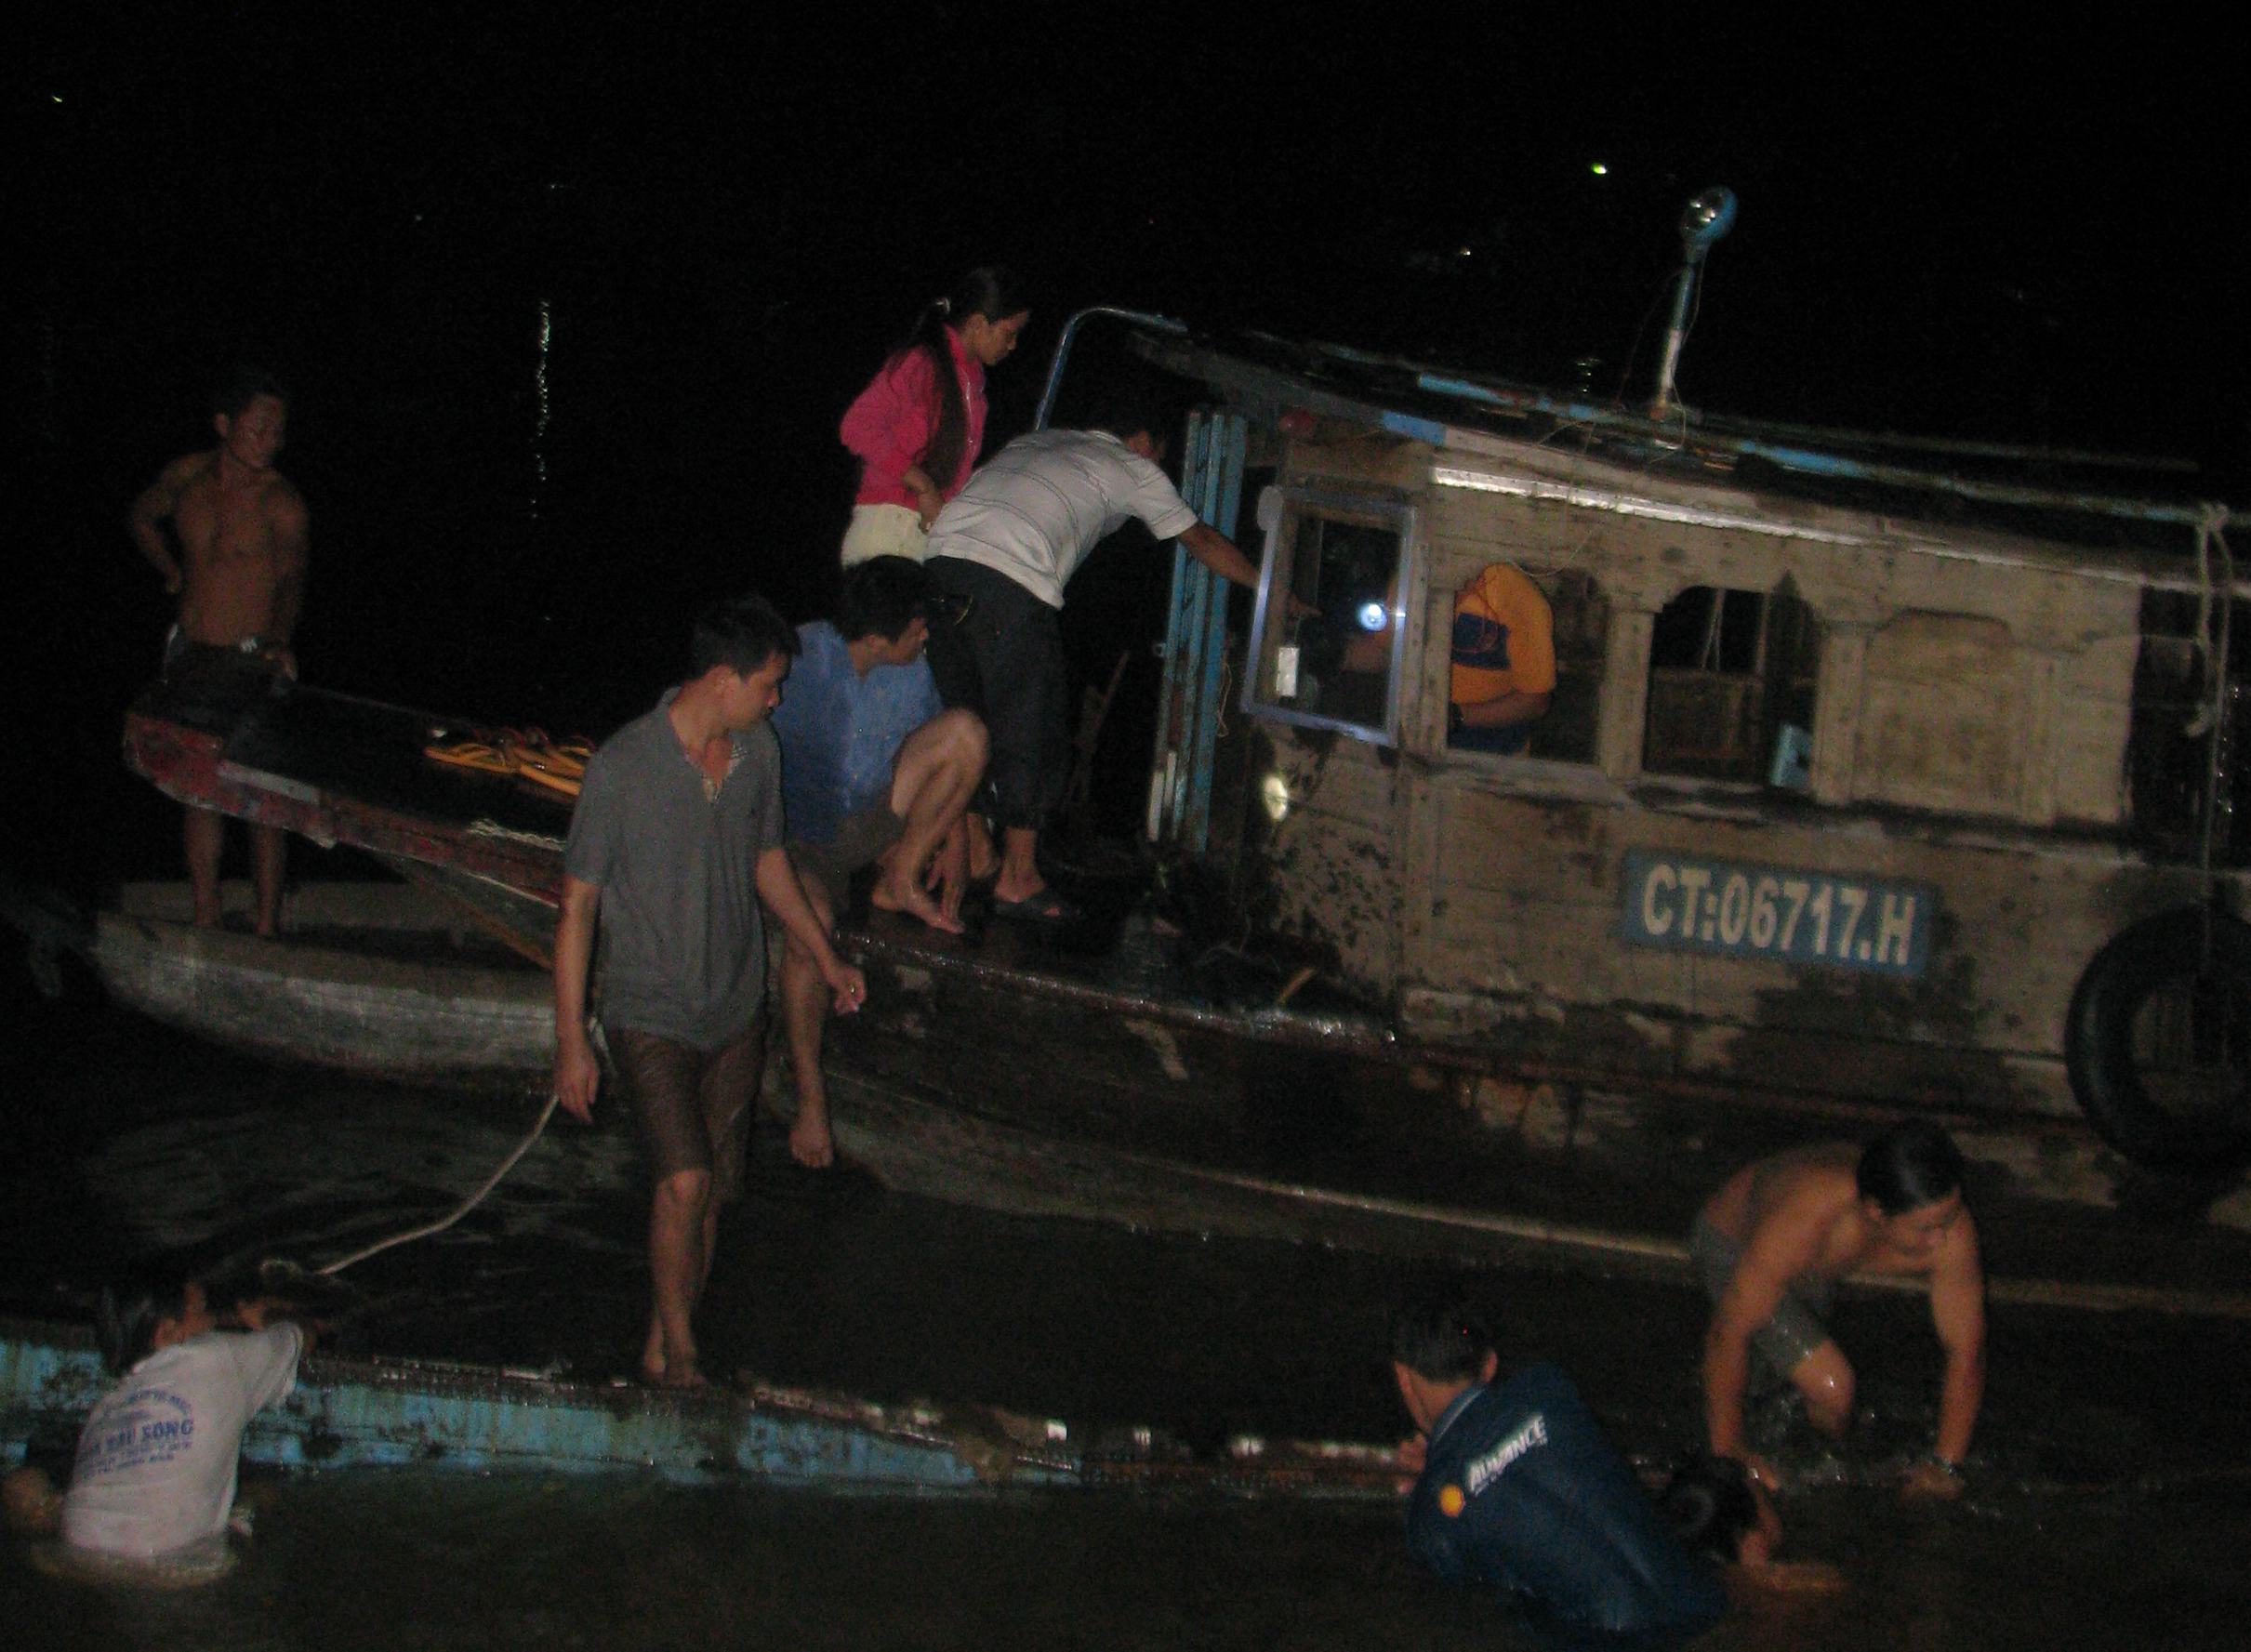 Dù đêm khuya, nhiều người dân vẫn giúp chủ ghe bị chìm lặn vớt hàng hóa đưa lên bờ